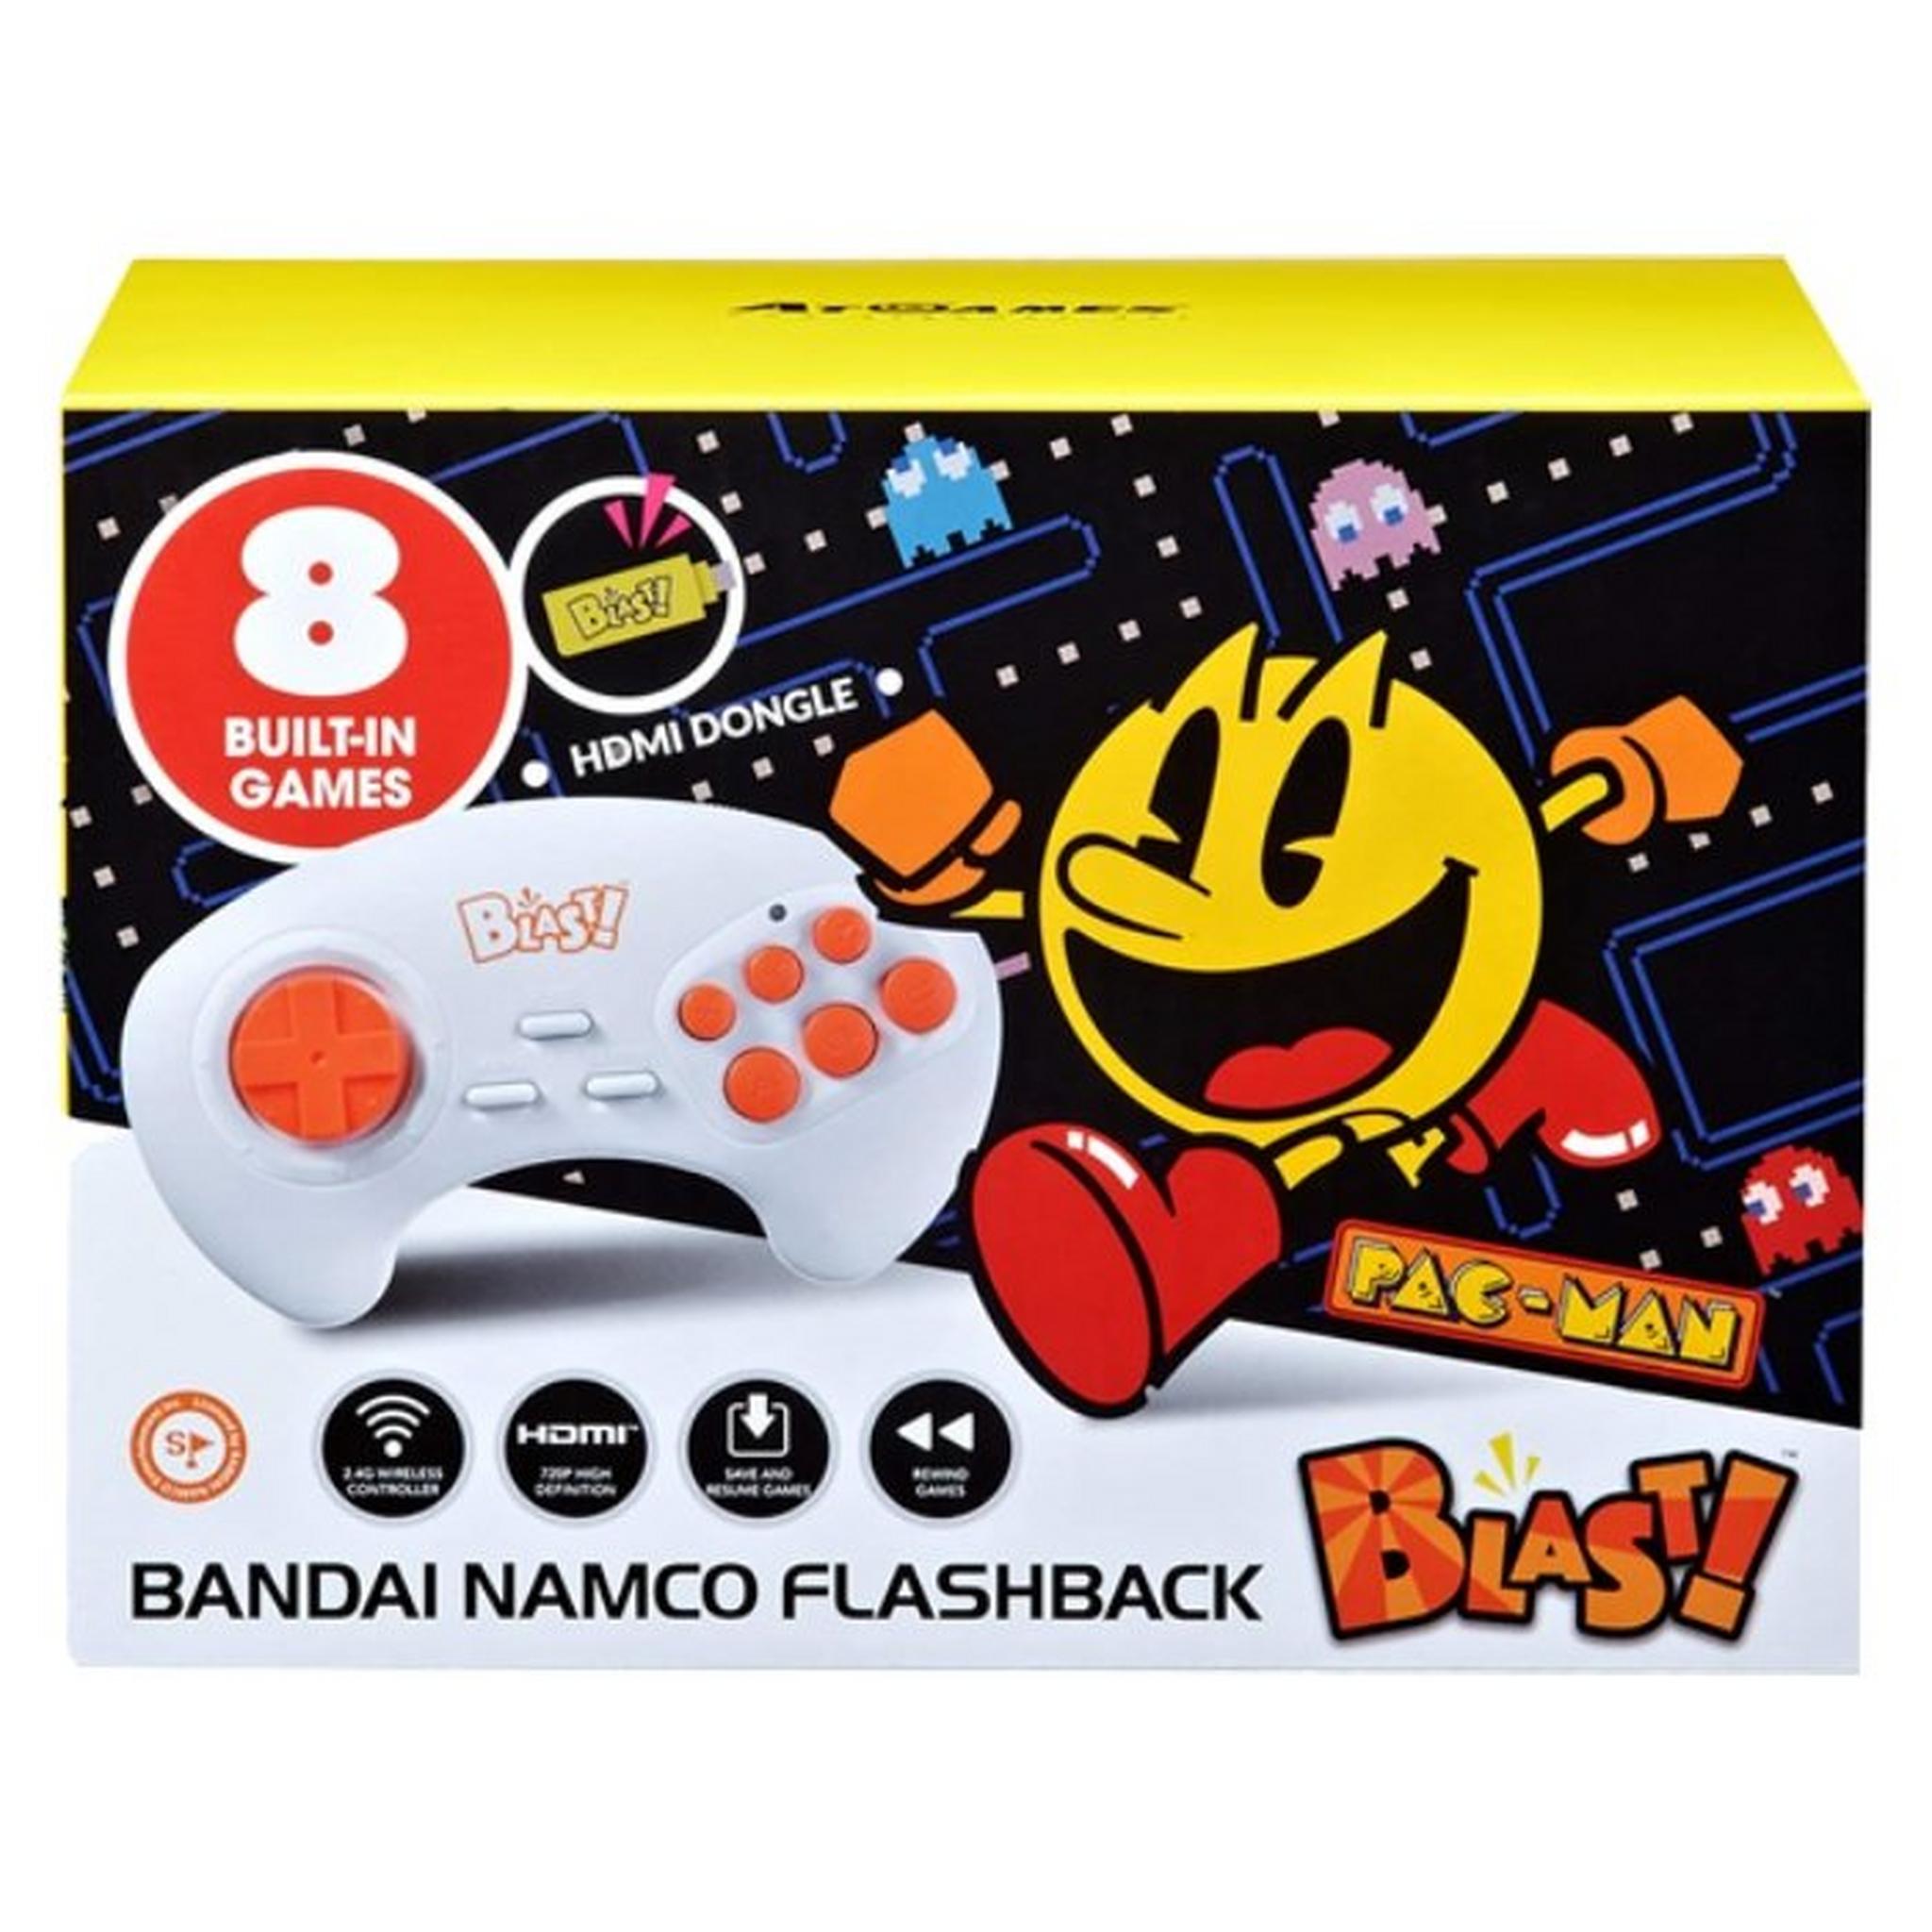 جهاز فلاش باك بلاست بانداي نامكو مع 8 ألعاب مدمجة من آت جيمز